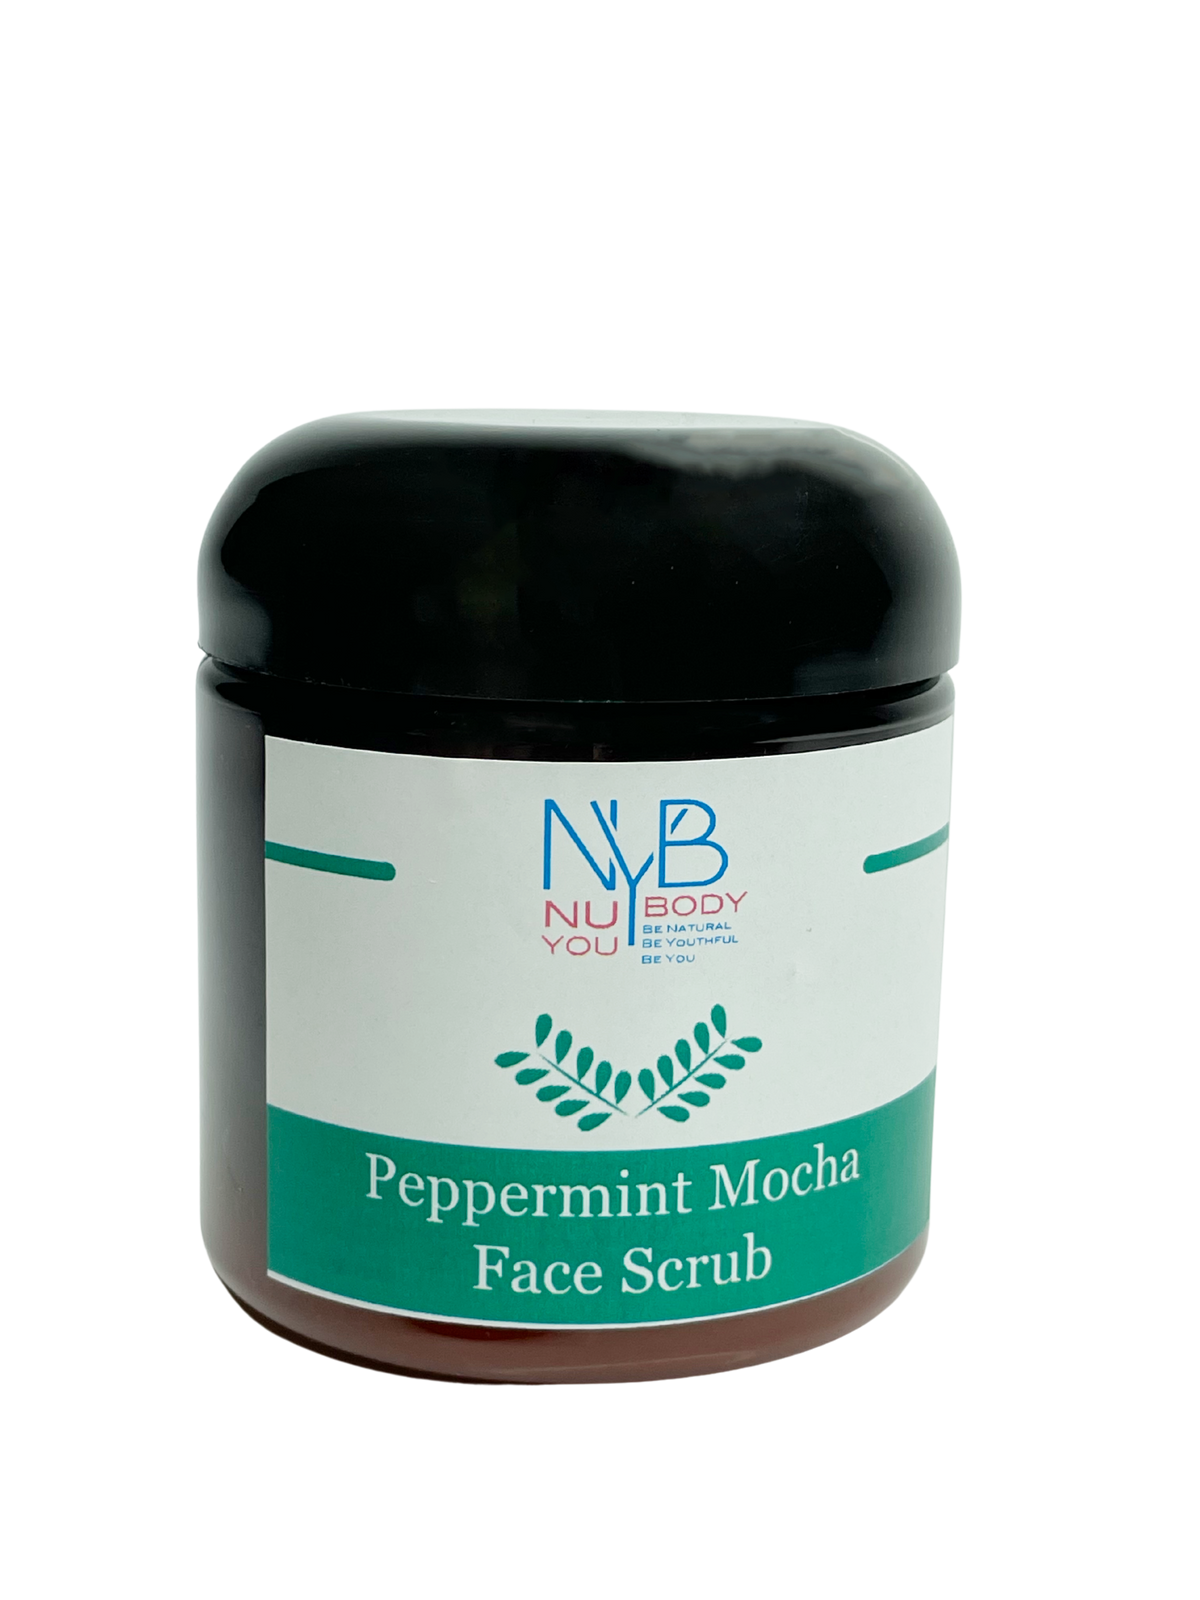 Peppermint Mocha Face Scrub